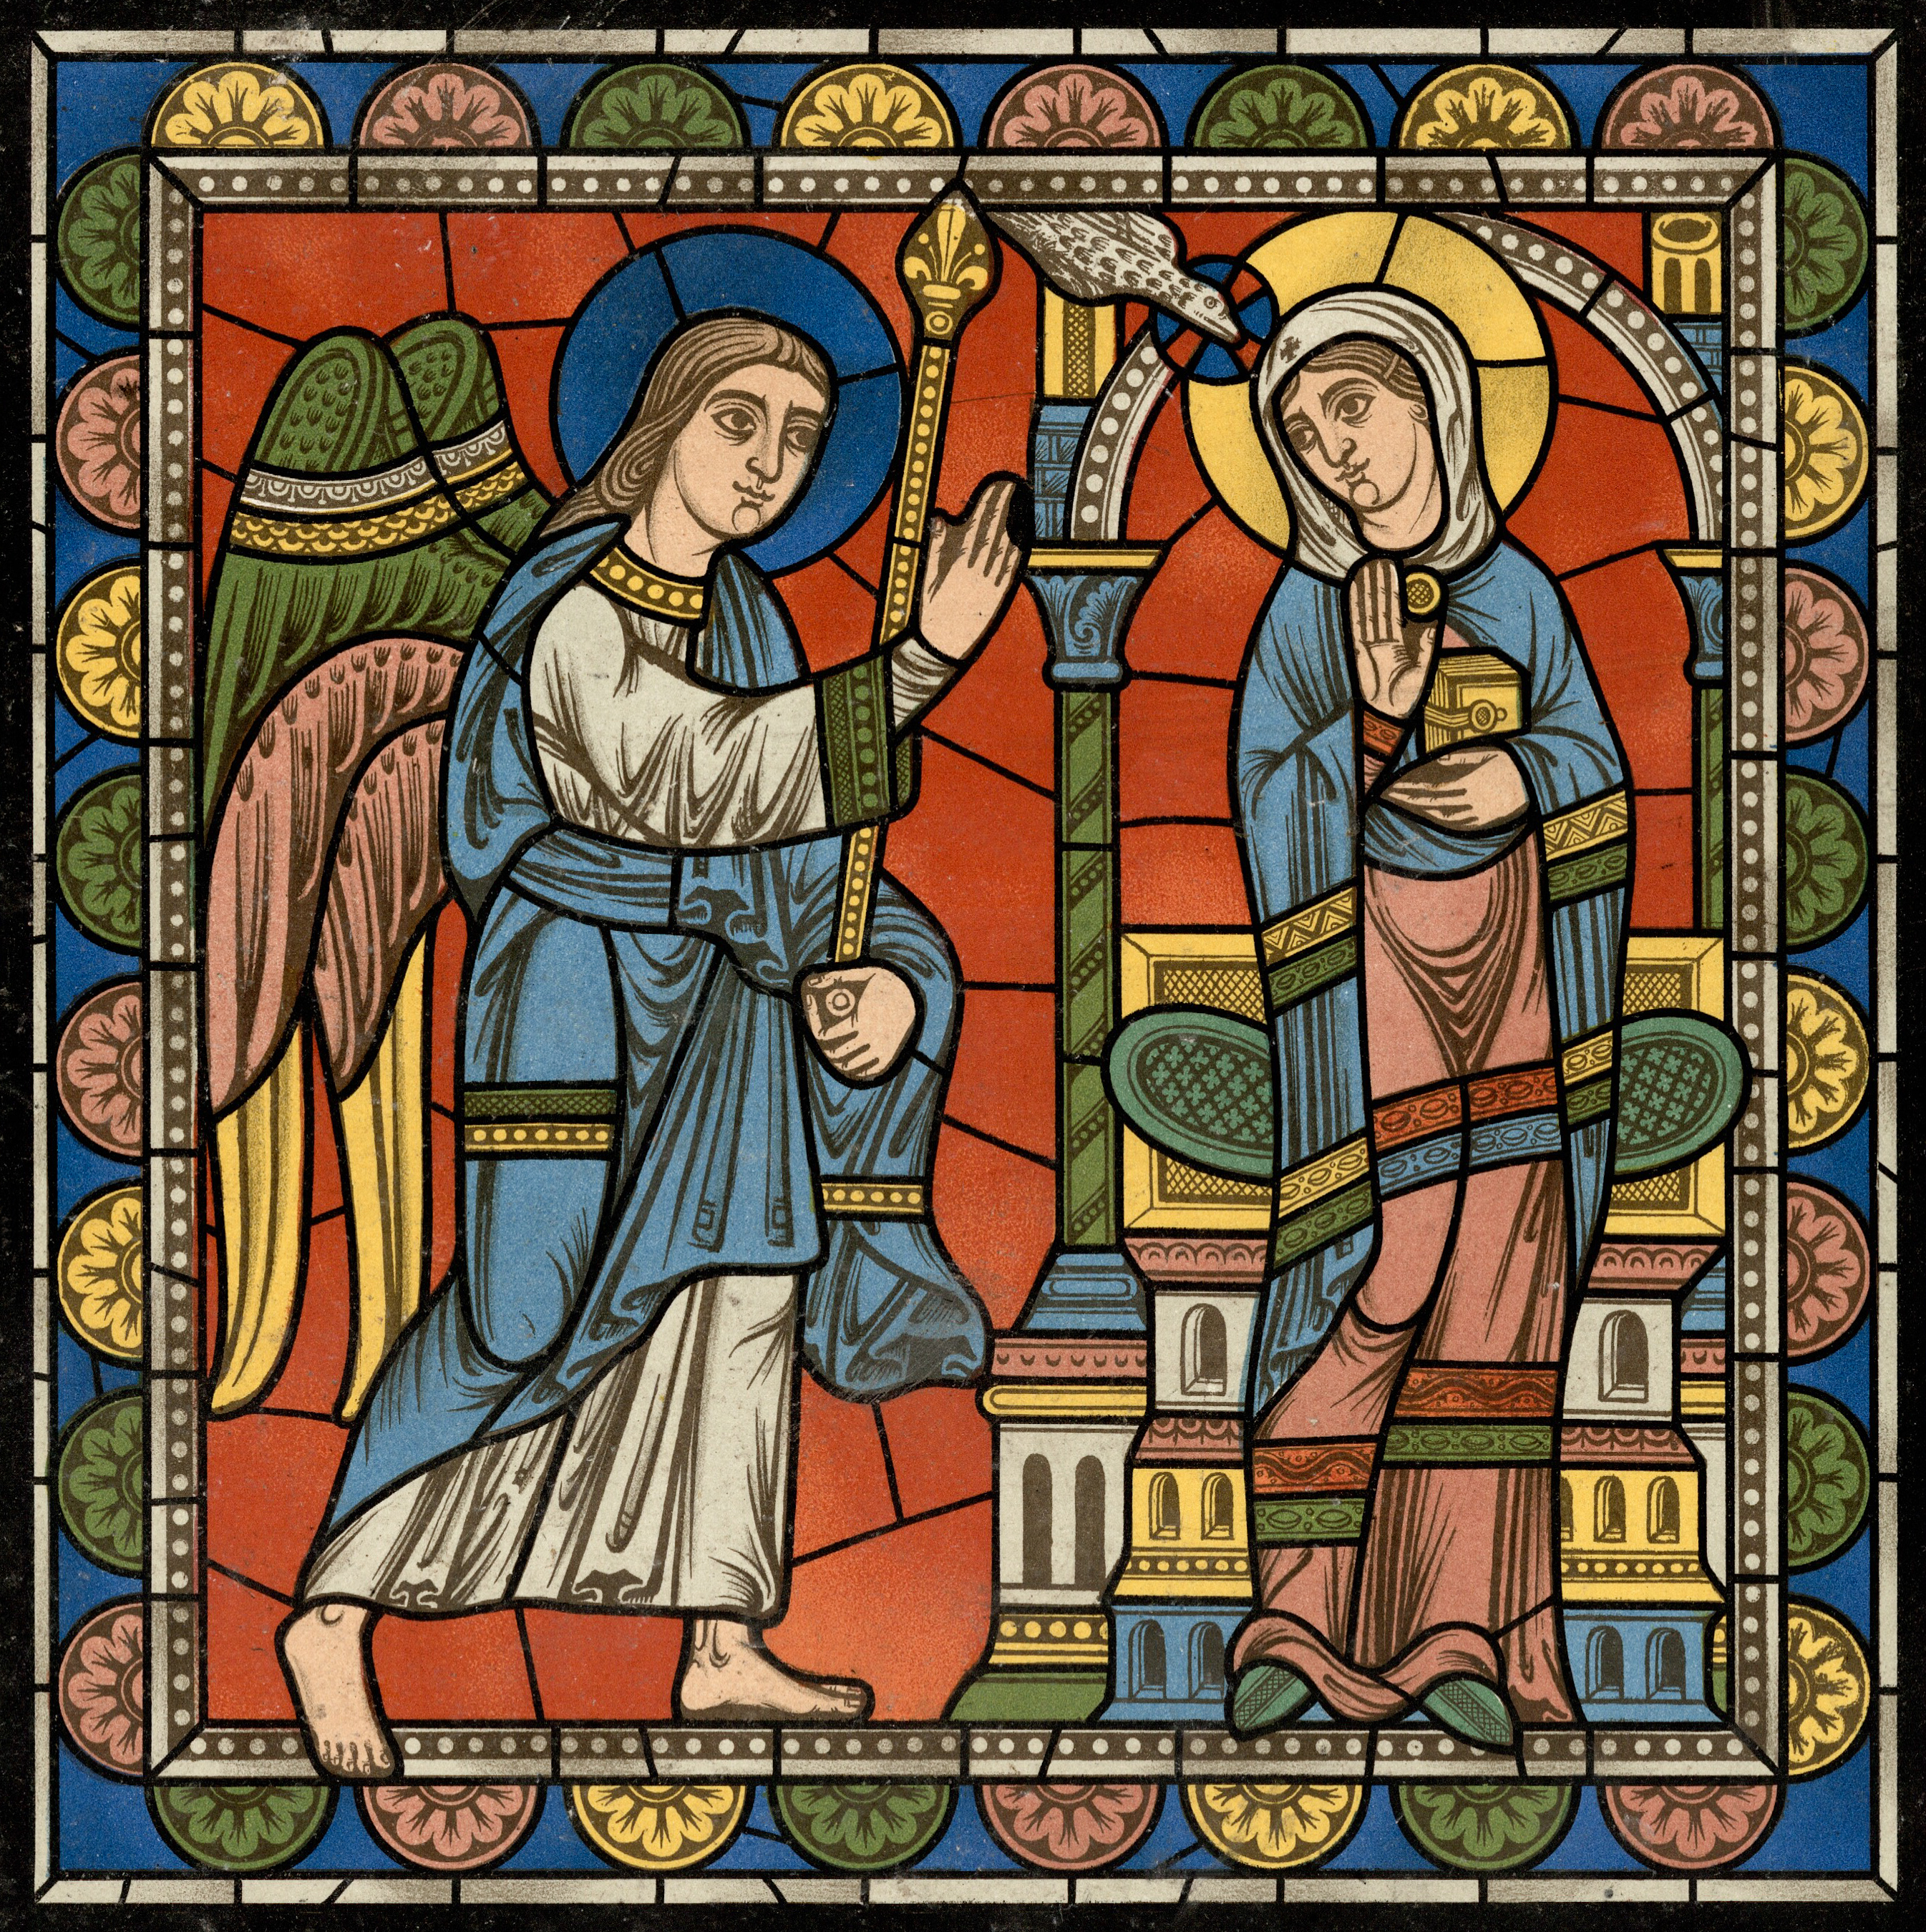 Chartres Kirchenfenster - Das Leben des Jesus Motiv 01 Die Verheißung der Geburt Jesu Lk. 1.26